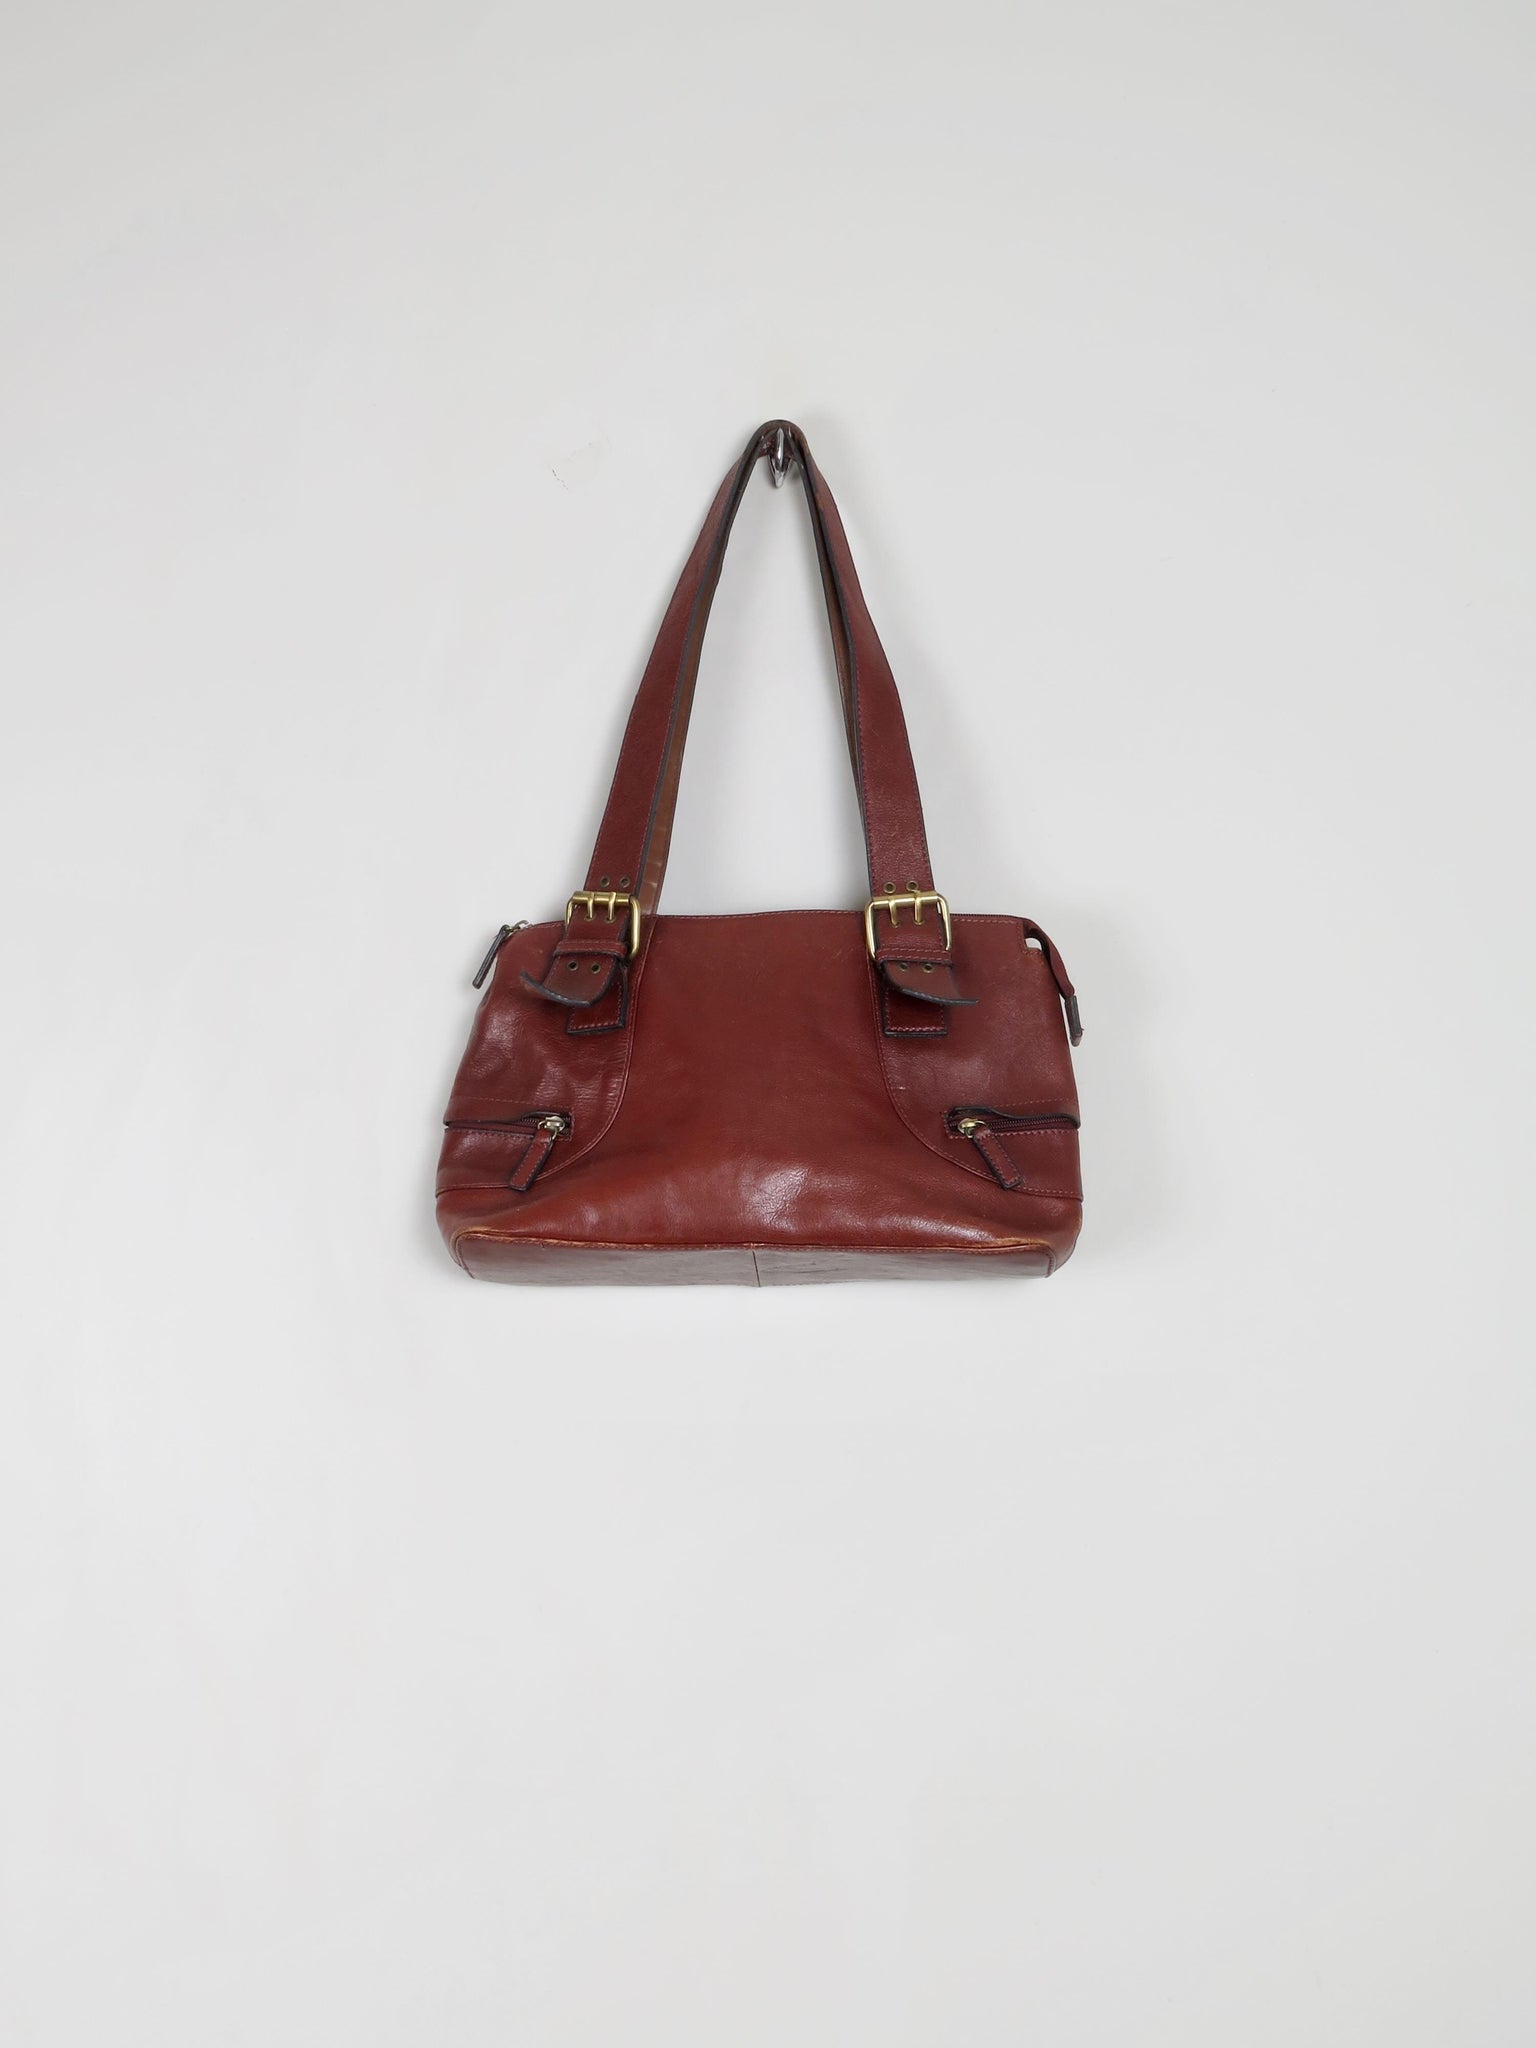 Brown Leather Vintage Bag - The Harlequin